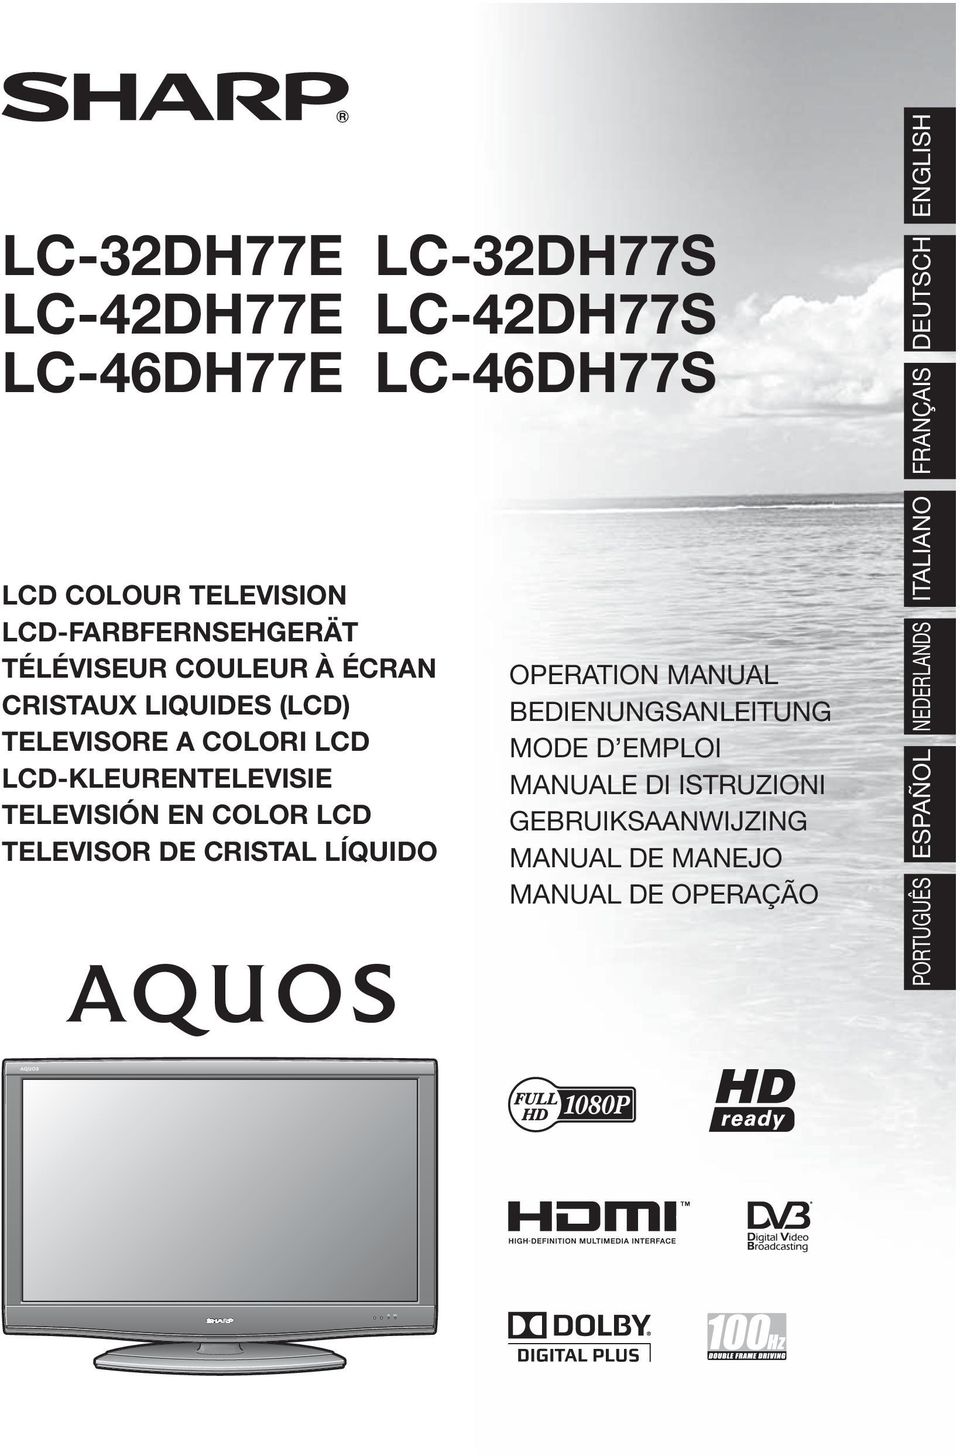 LCD-KLEURENTELEVISIE TELEVISIÓN EN COLOR LCD TELEVISOR DE CRISTAL LÍQUIDO OPERATION MANUAL BEDIENUNGSANLEITUNG